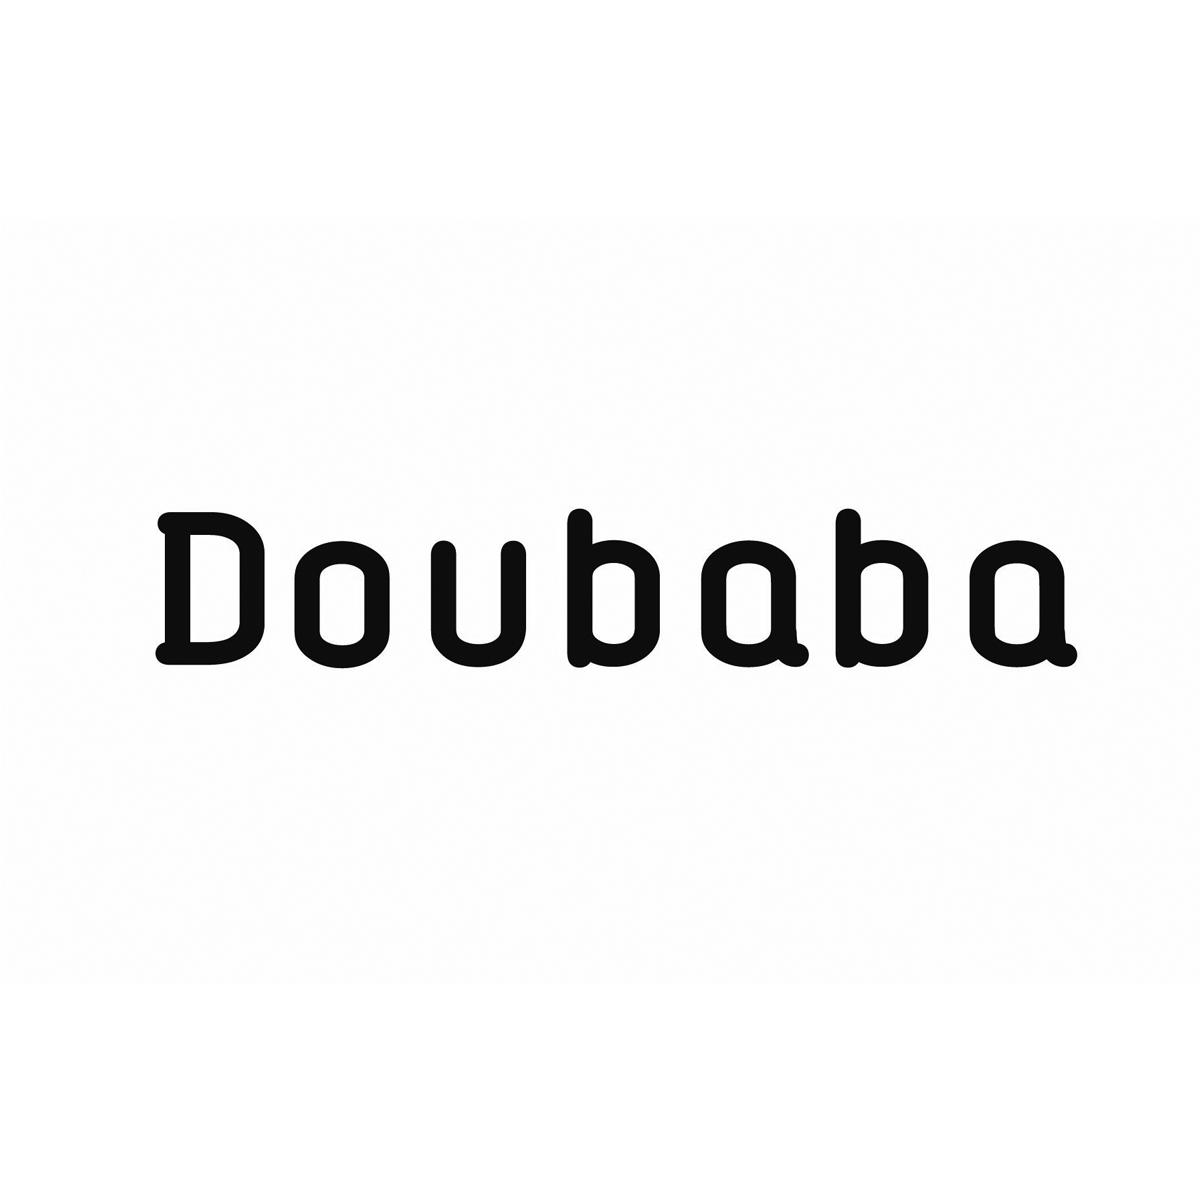 DOUBABA